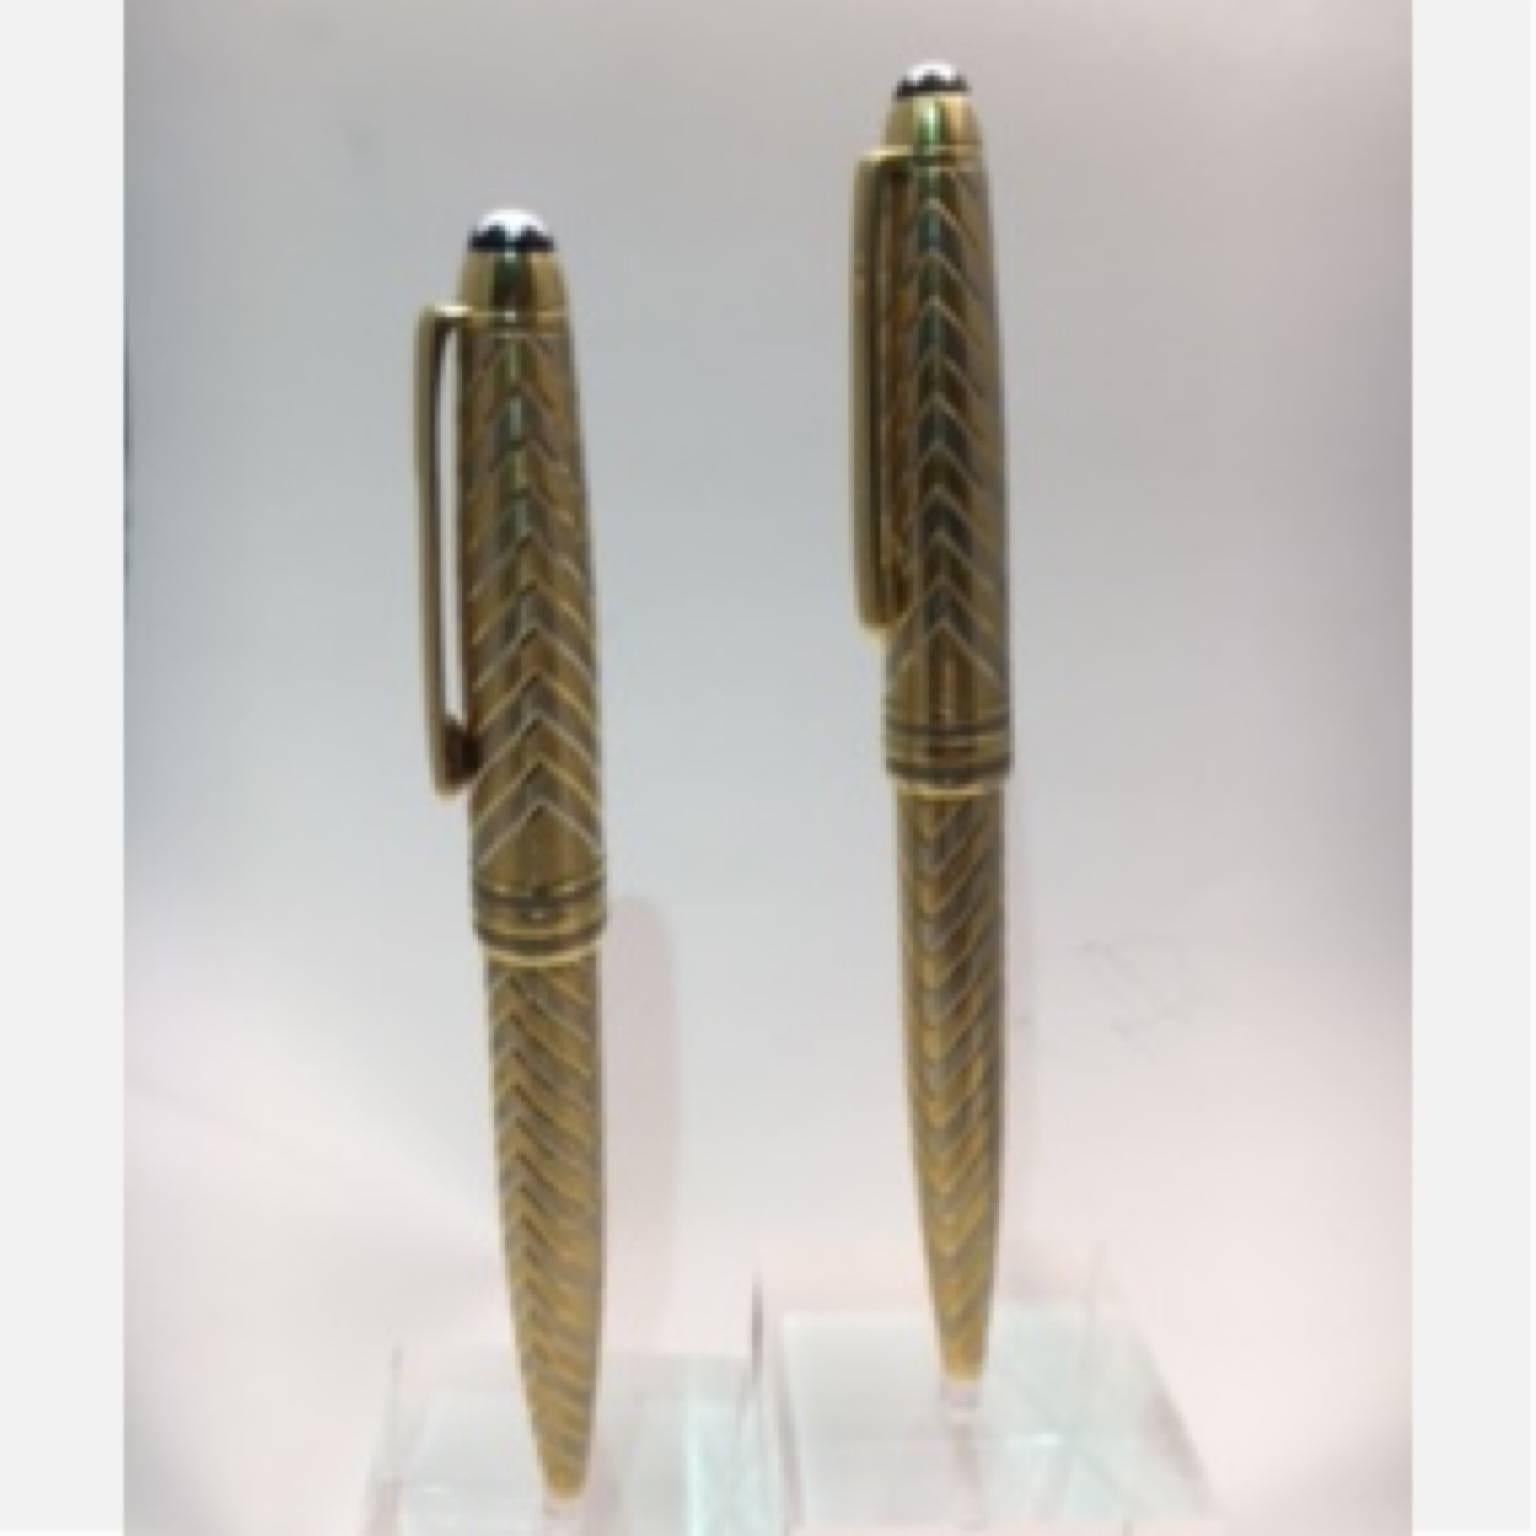 mont blanc pen and pencil set